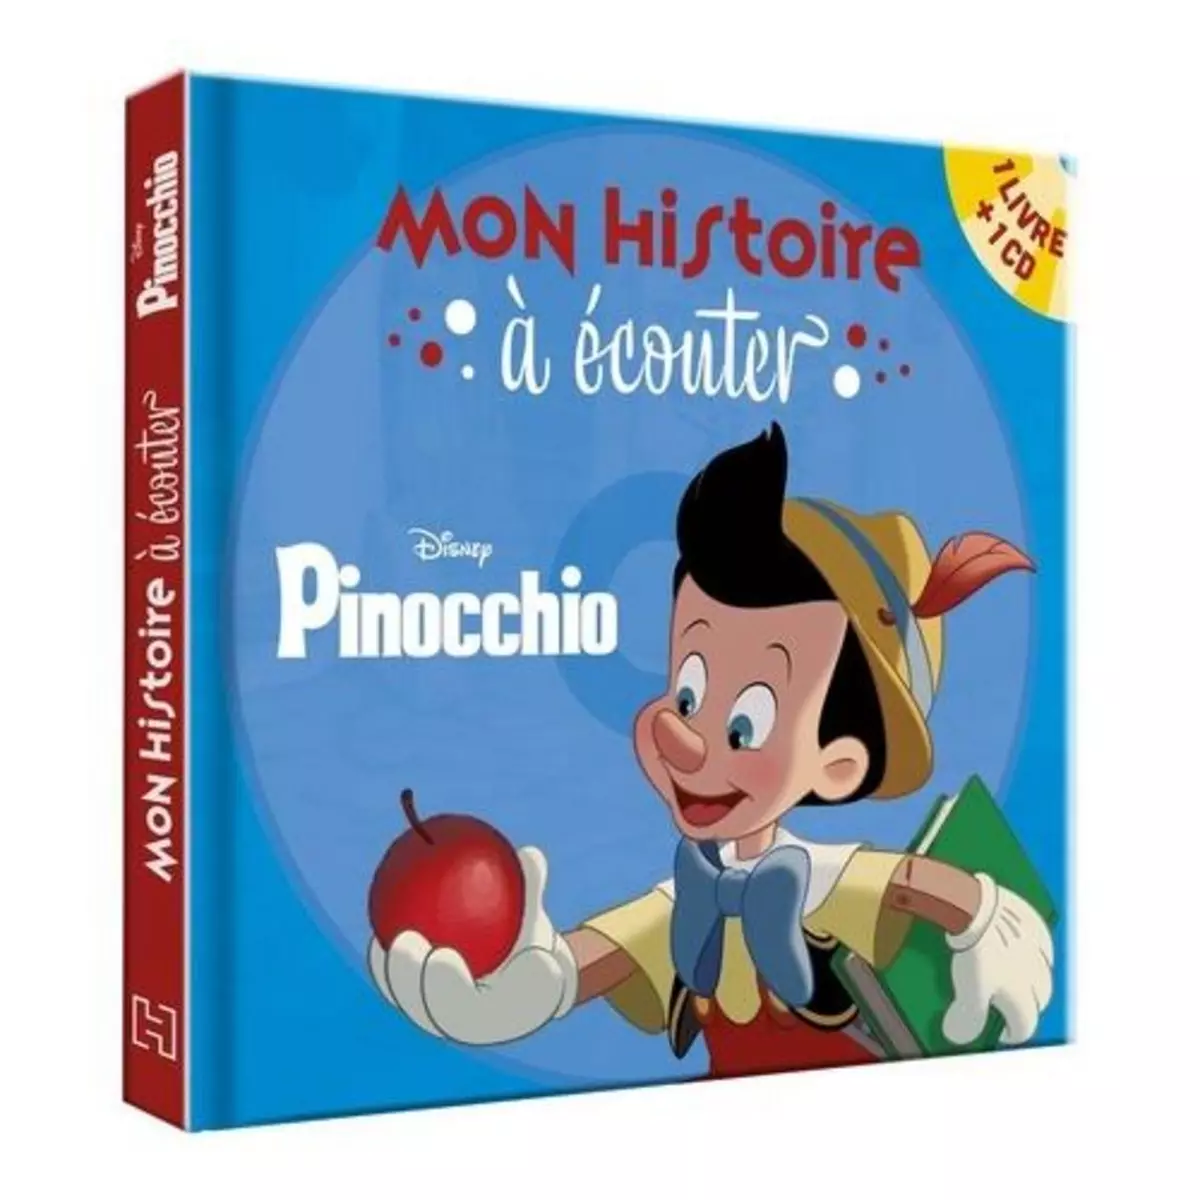  PINOCCHIO. AVEC 1 CD AUDIO, Disney